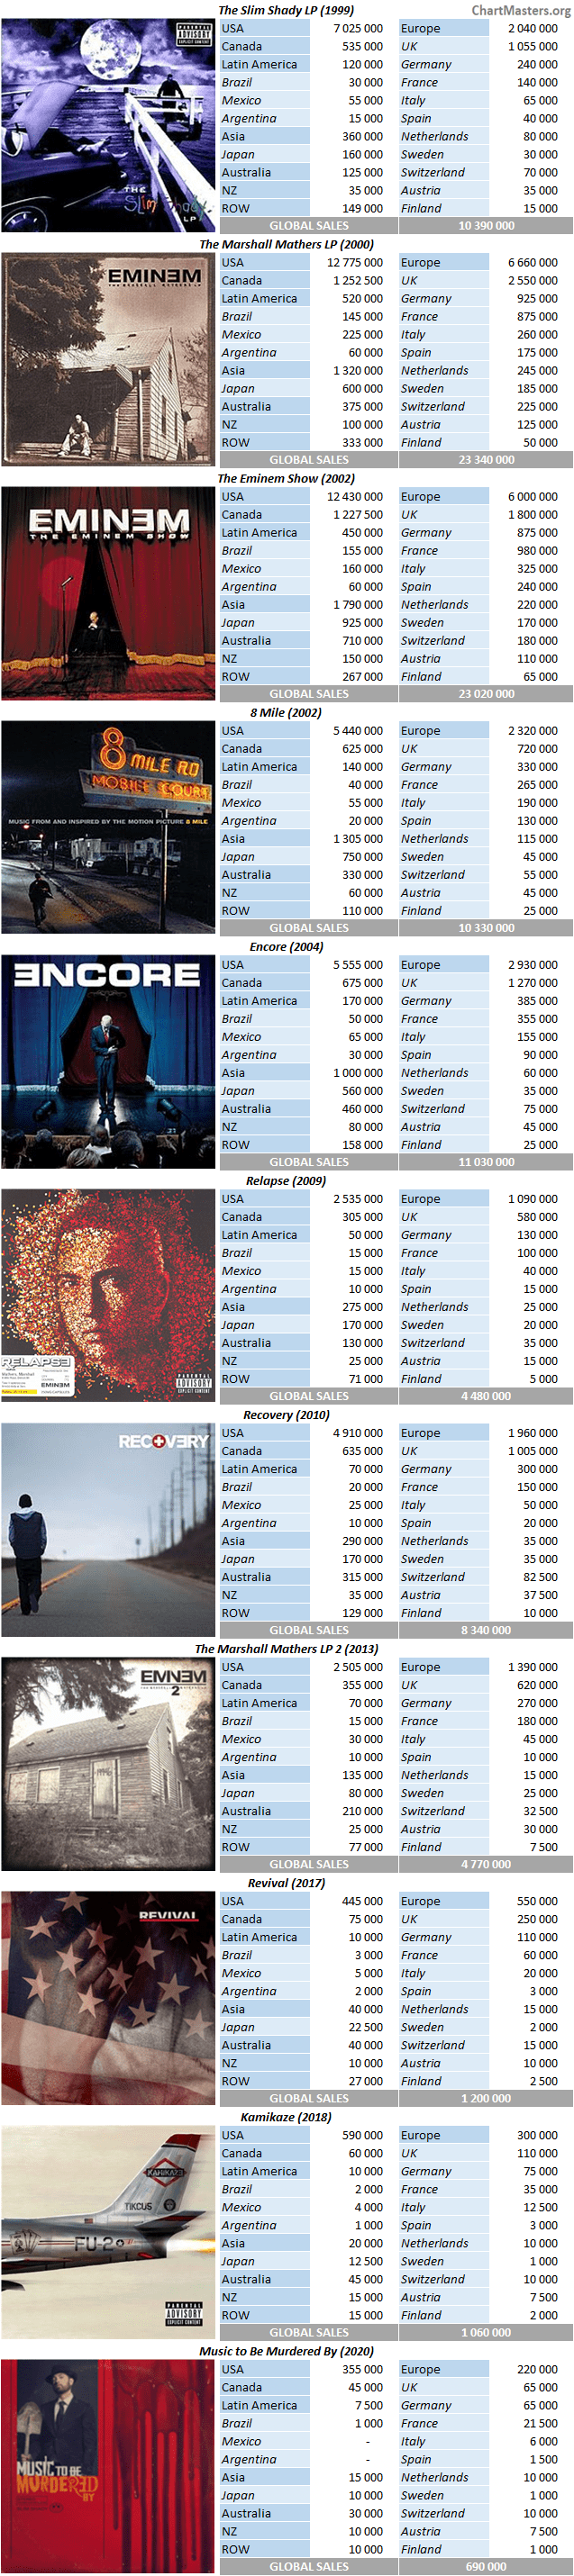 CSPC 2021 Eminem album sales breakdowns